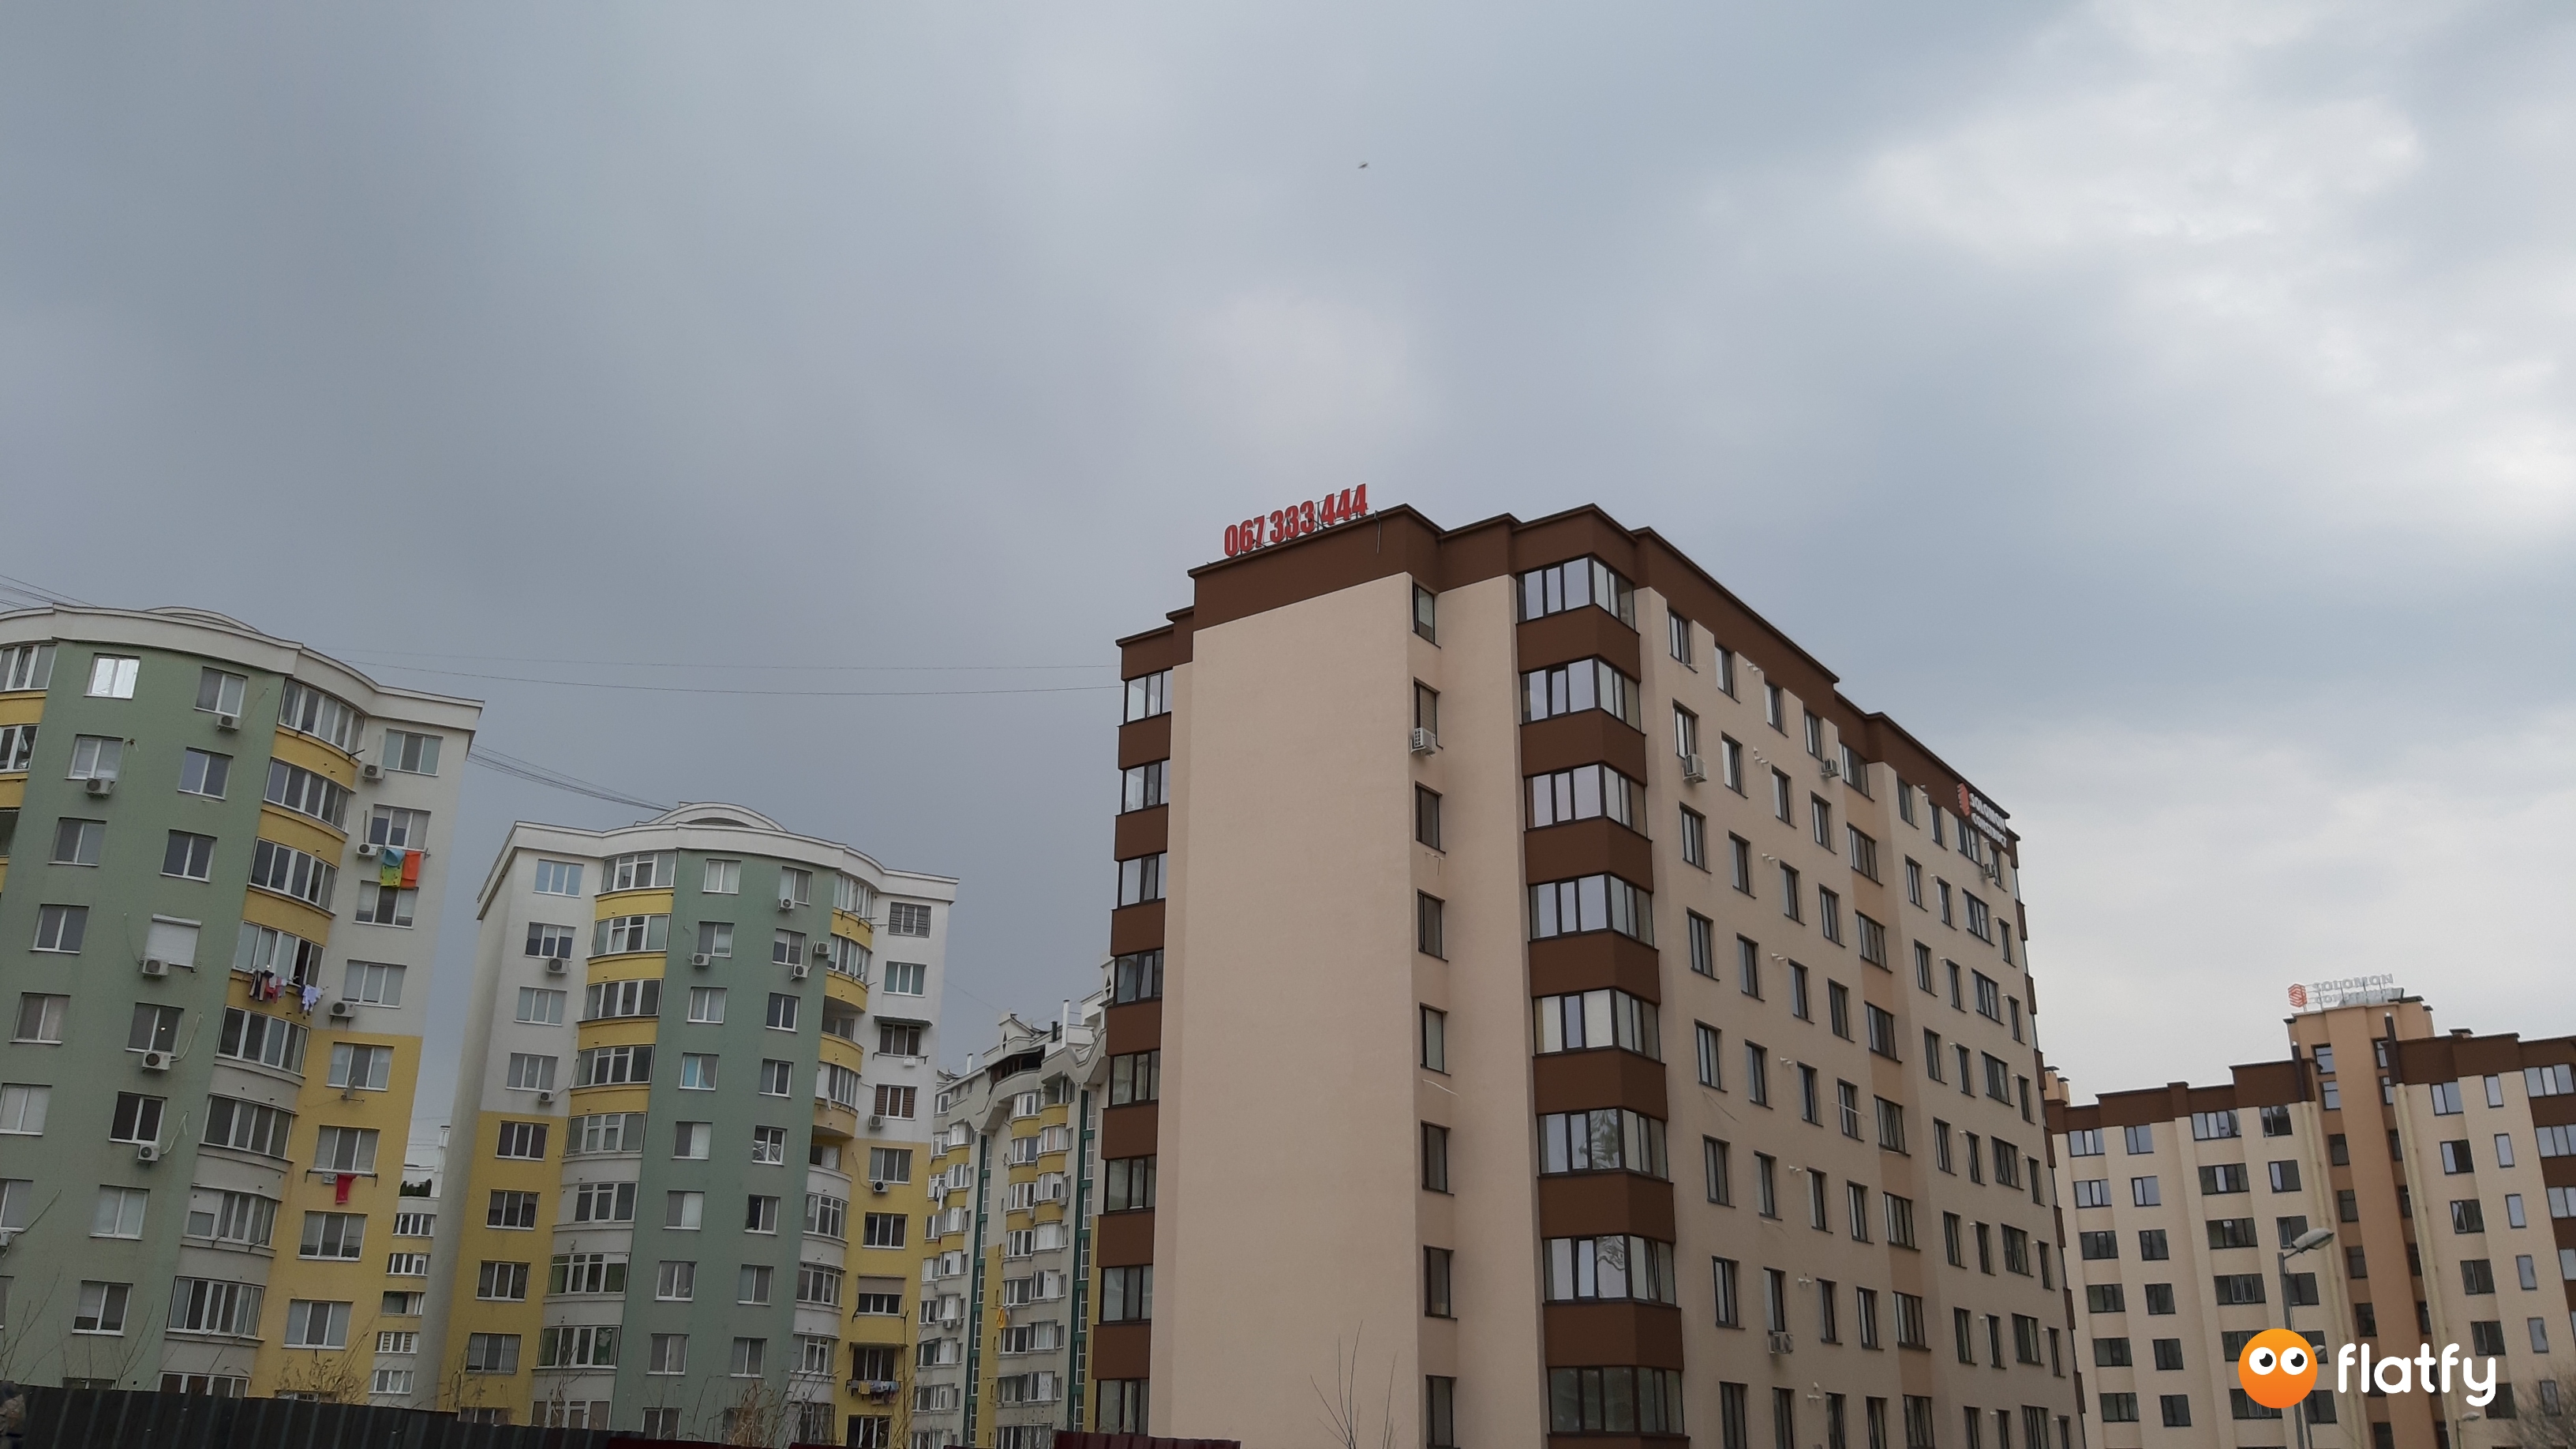 Evoluția construcției Complexului Complex Mircea cel Bătrîn 31/7 - Punct 3, Martie 2019